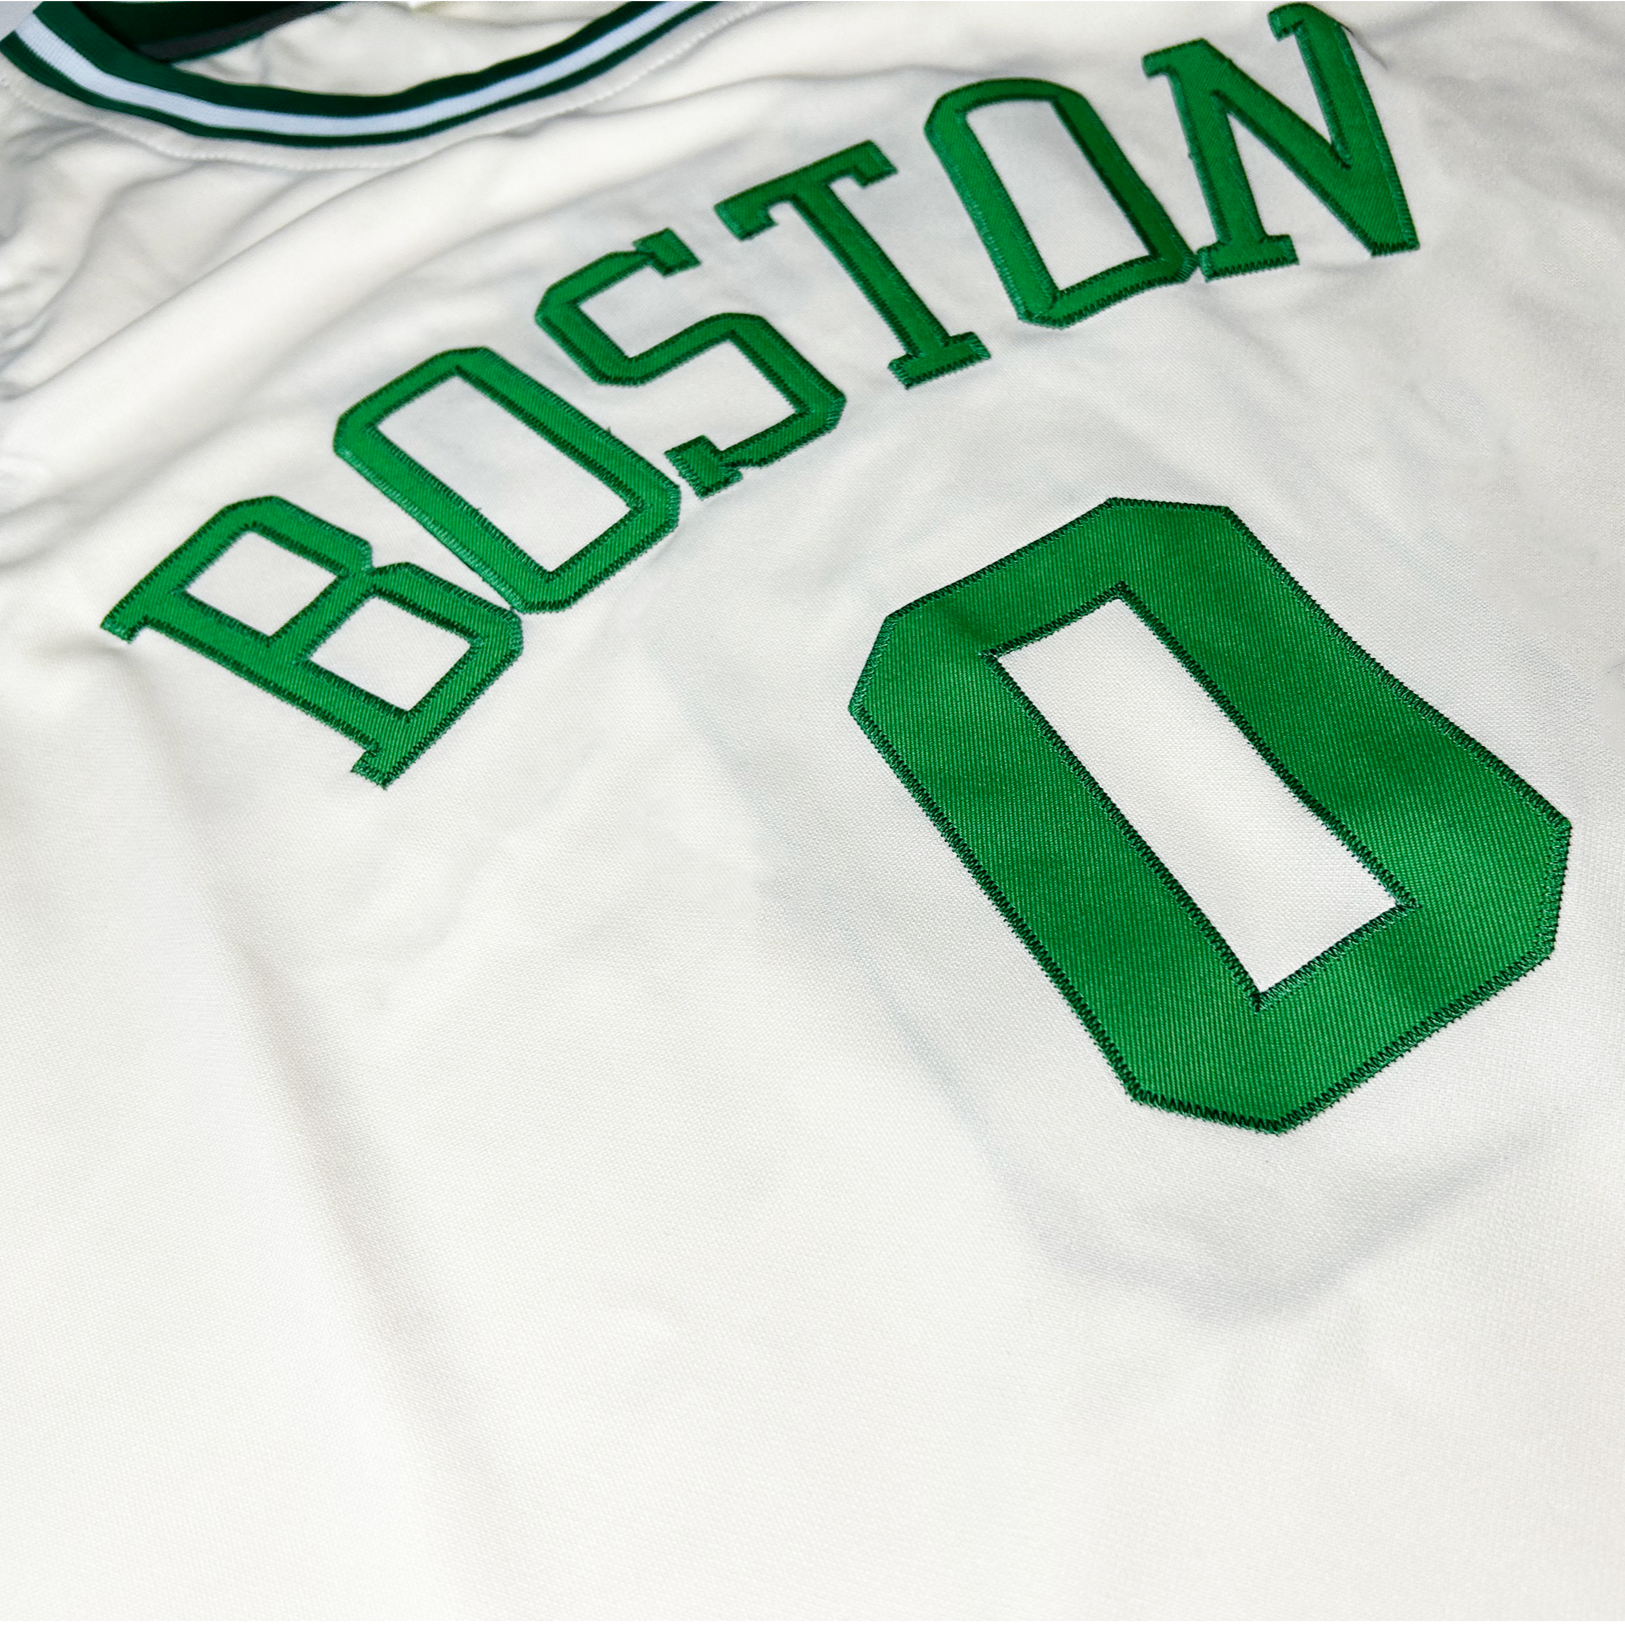 Boston Cream Collection Basketball Jersey - Small - Royal Retros